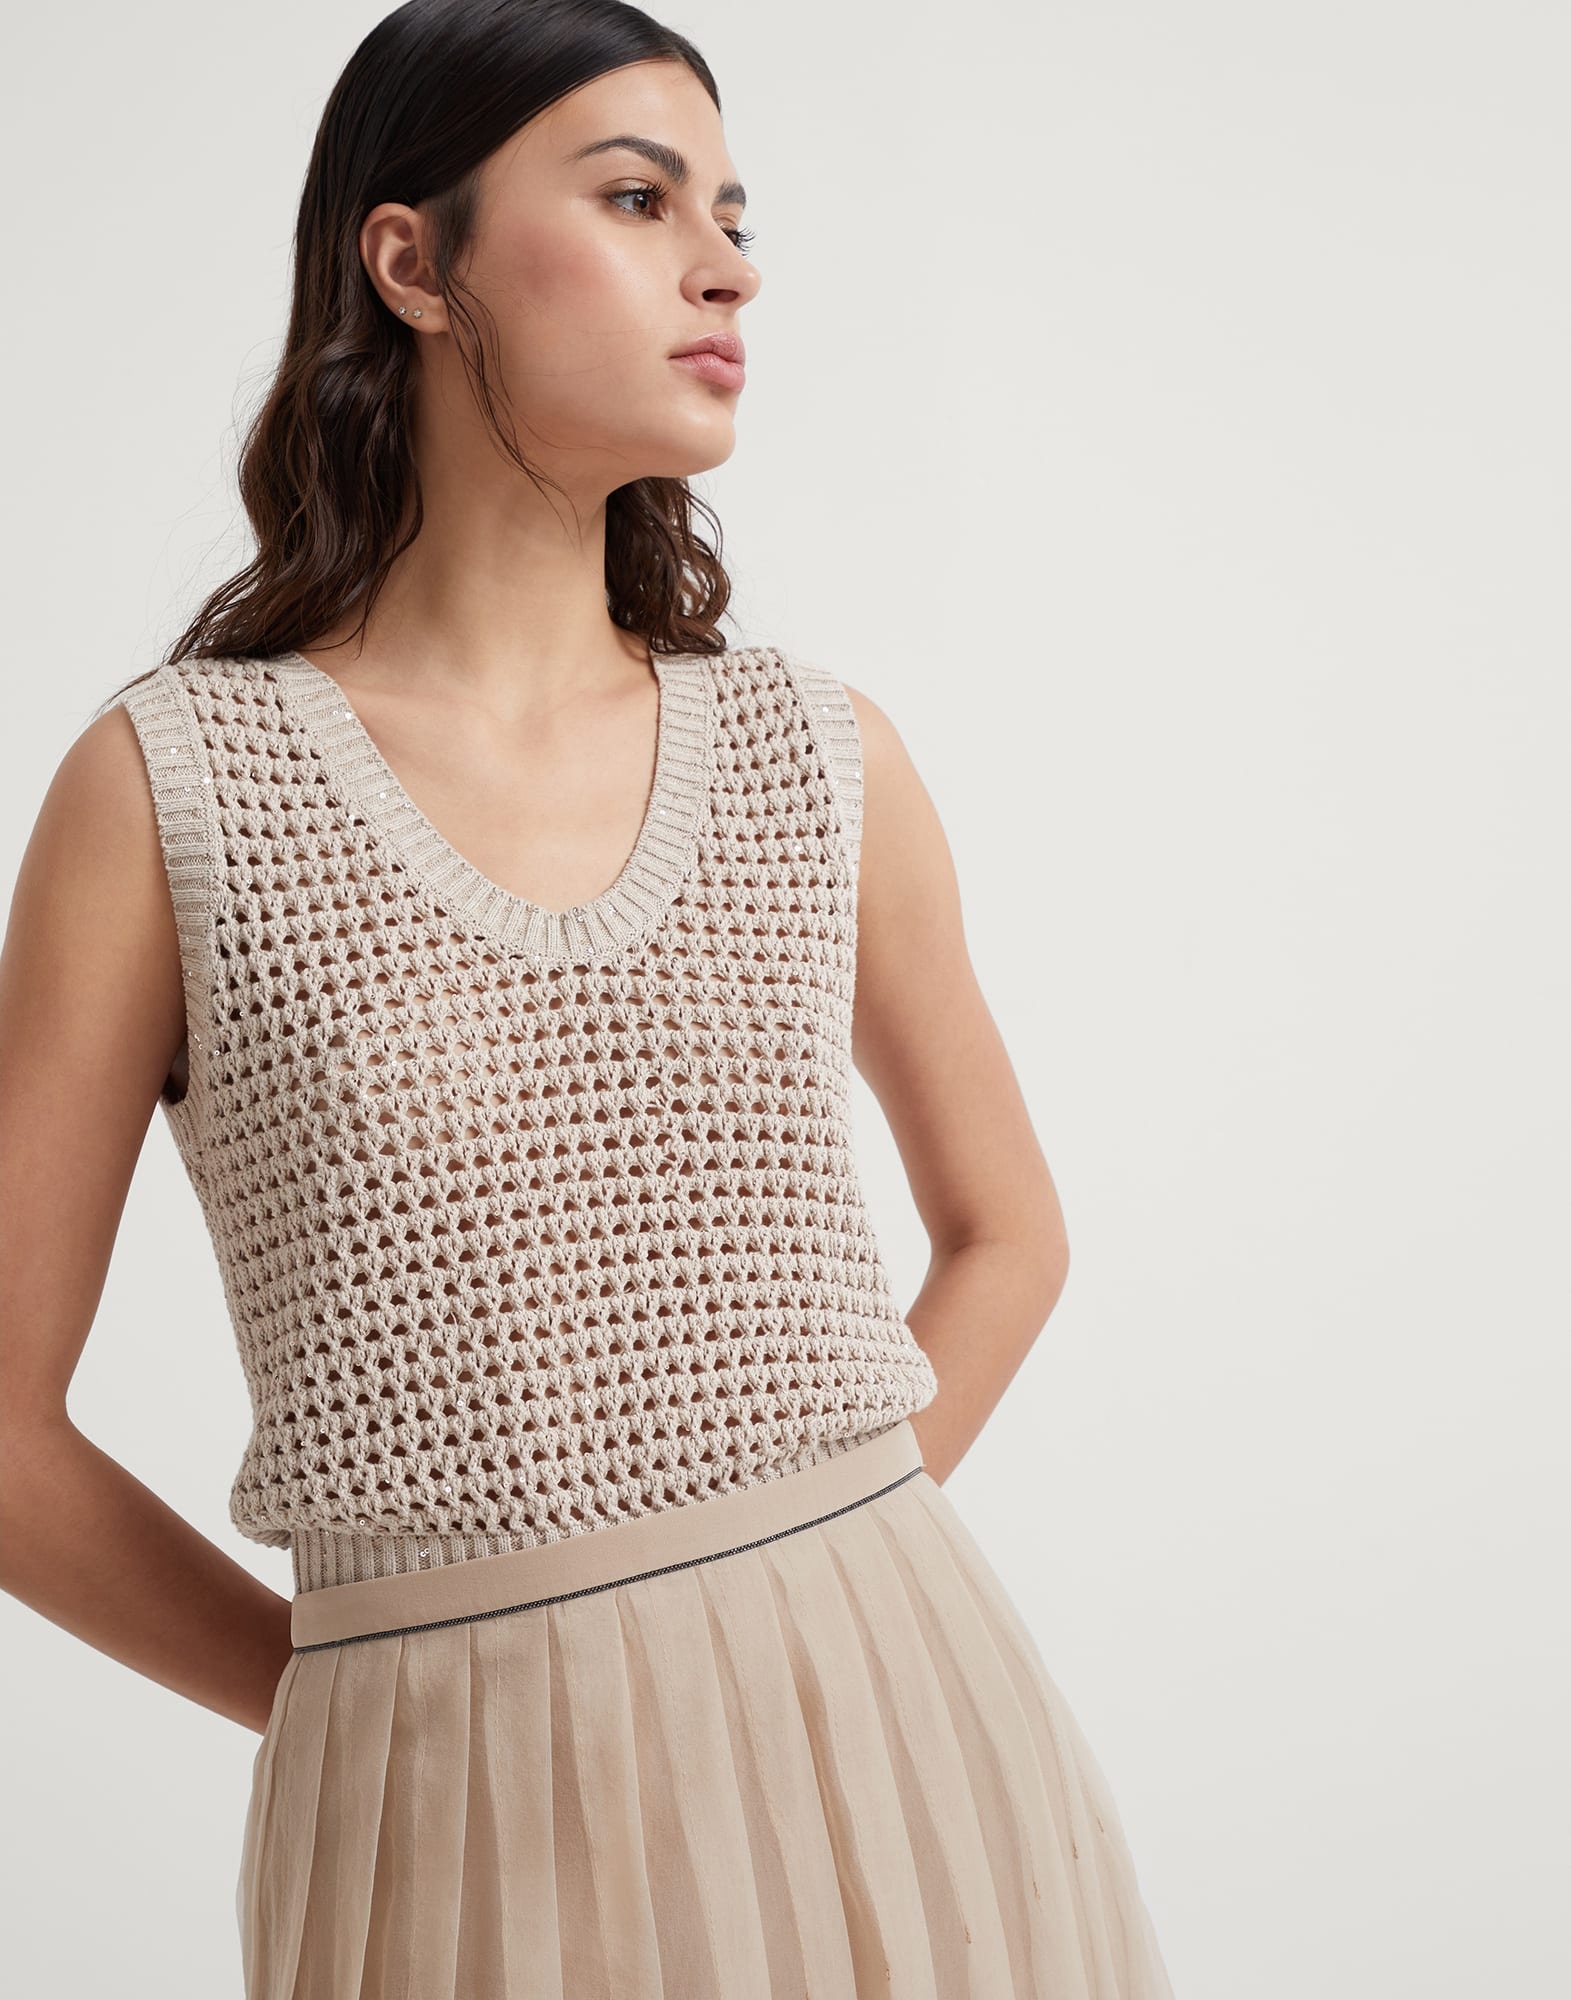 Crispy silk pleated midi skirt with shiny waistband - 3